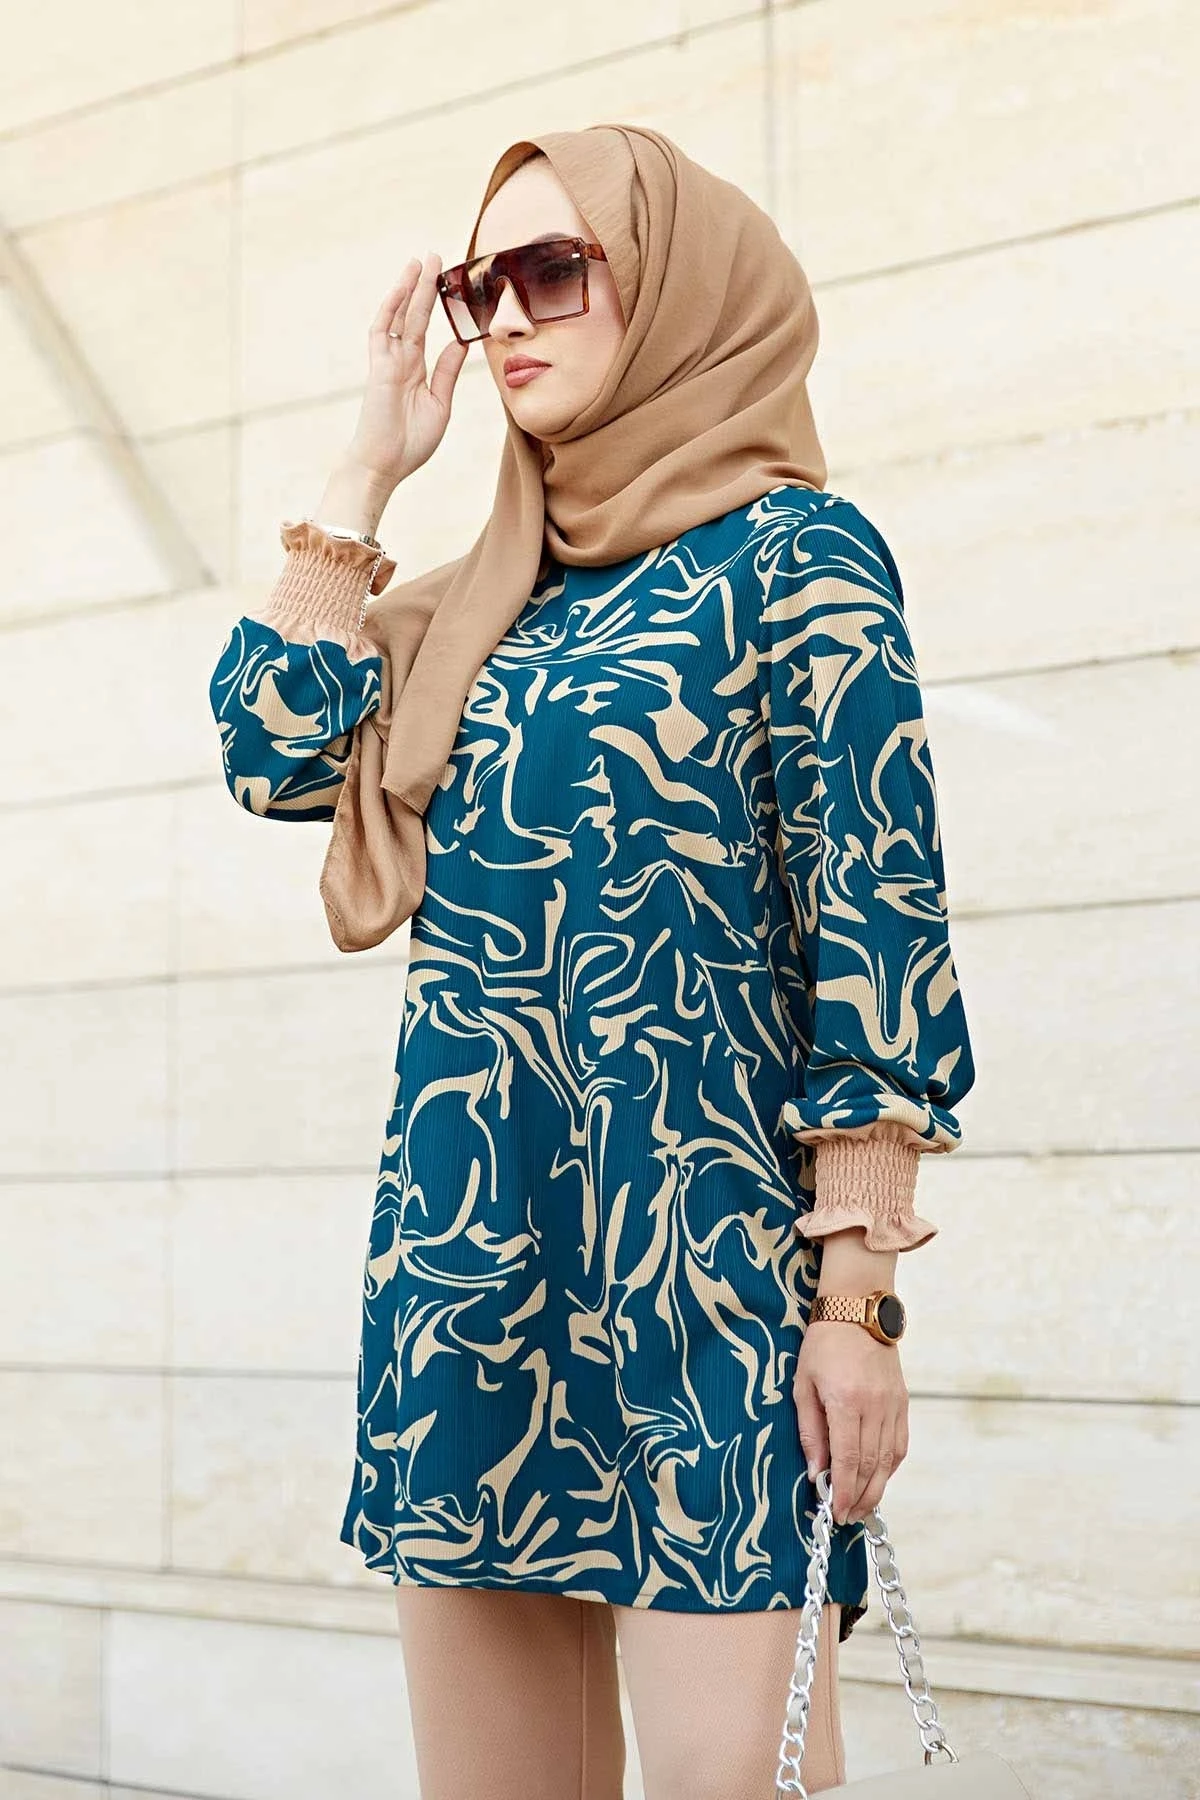 

Женский джинсовый комплект Rosella, женские джинсовые брюки с высокой эластичной талией, повседневная одежда в исламском стиле, Турция, Дубай